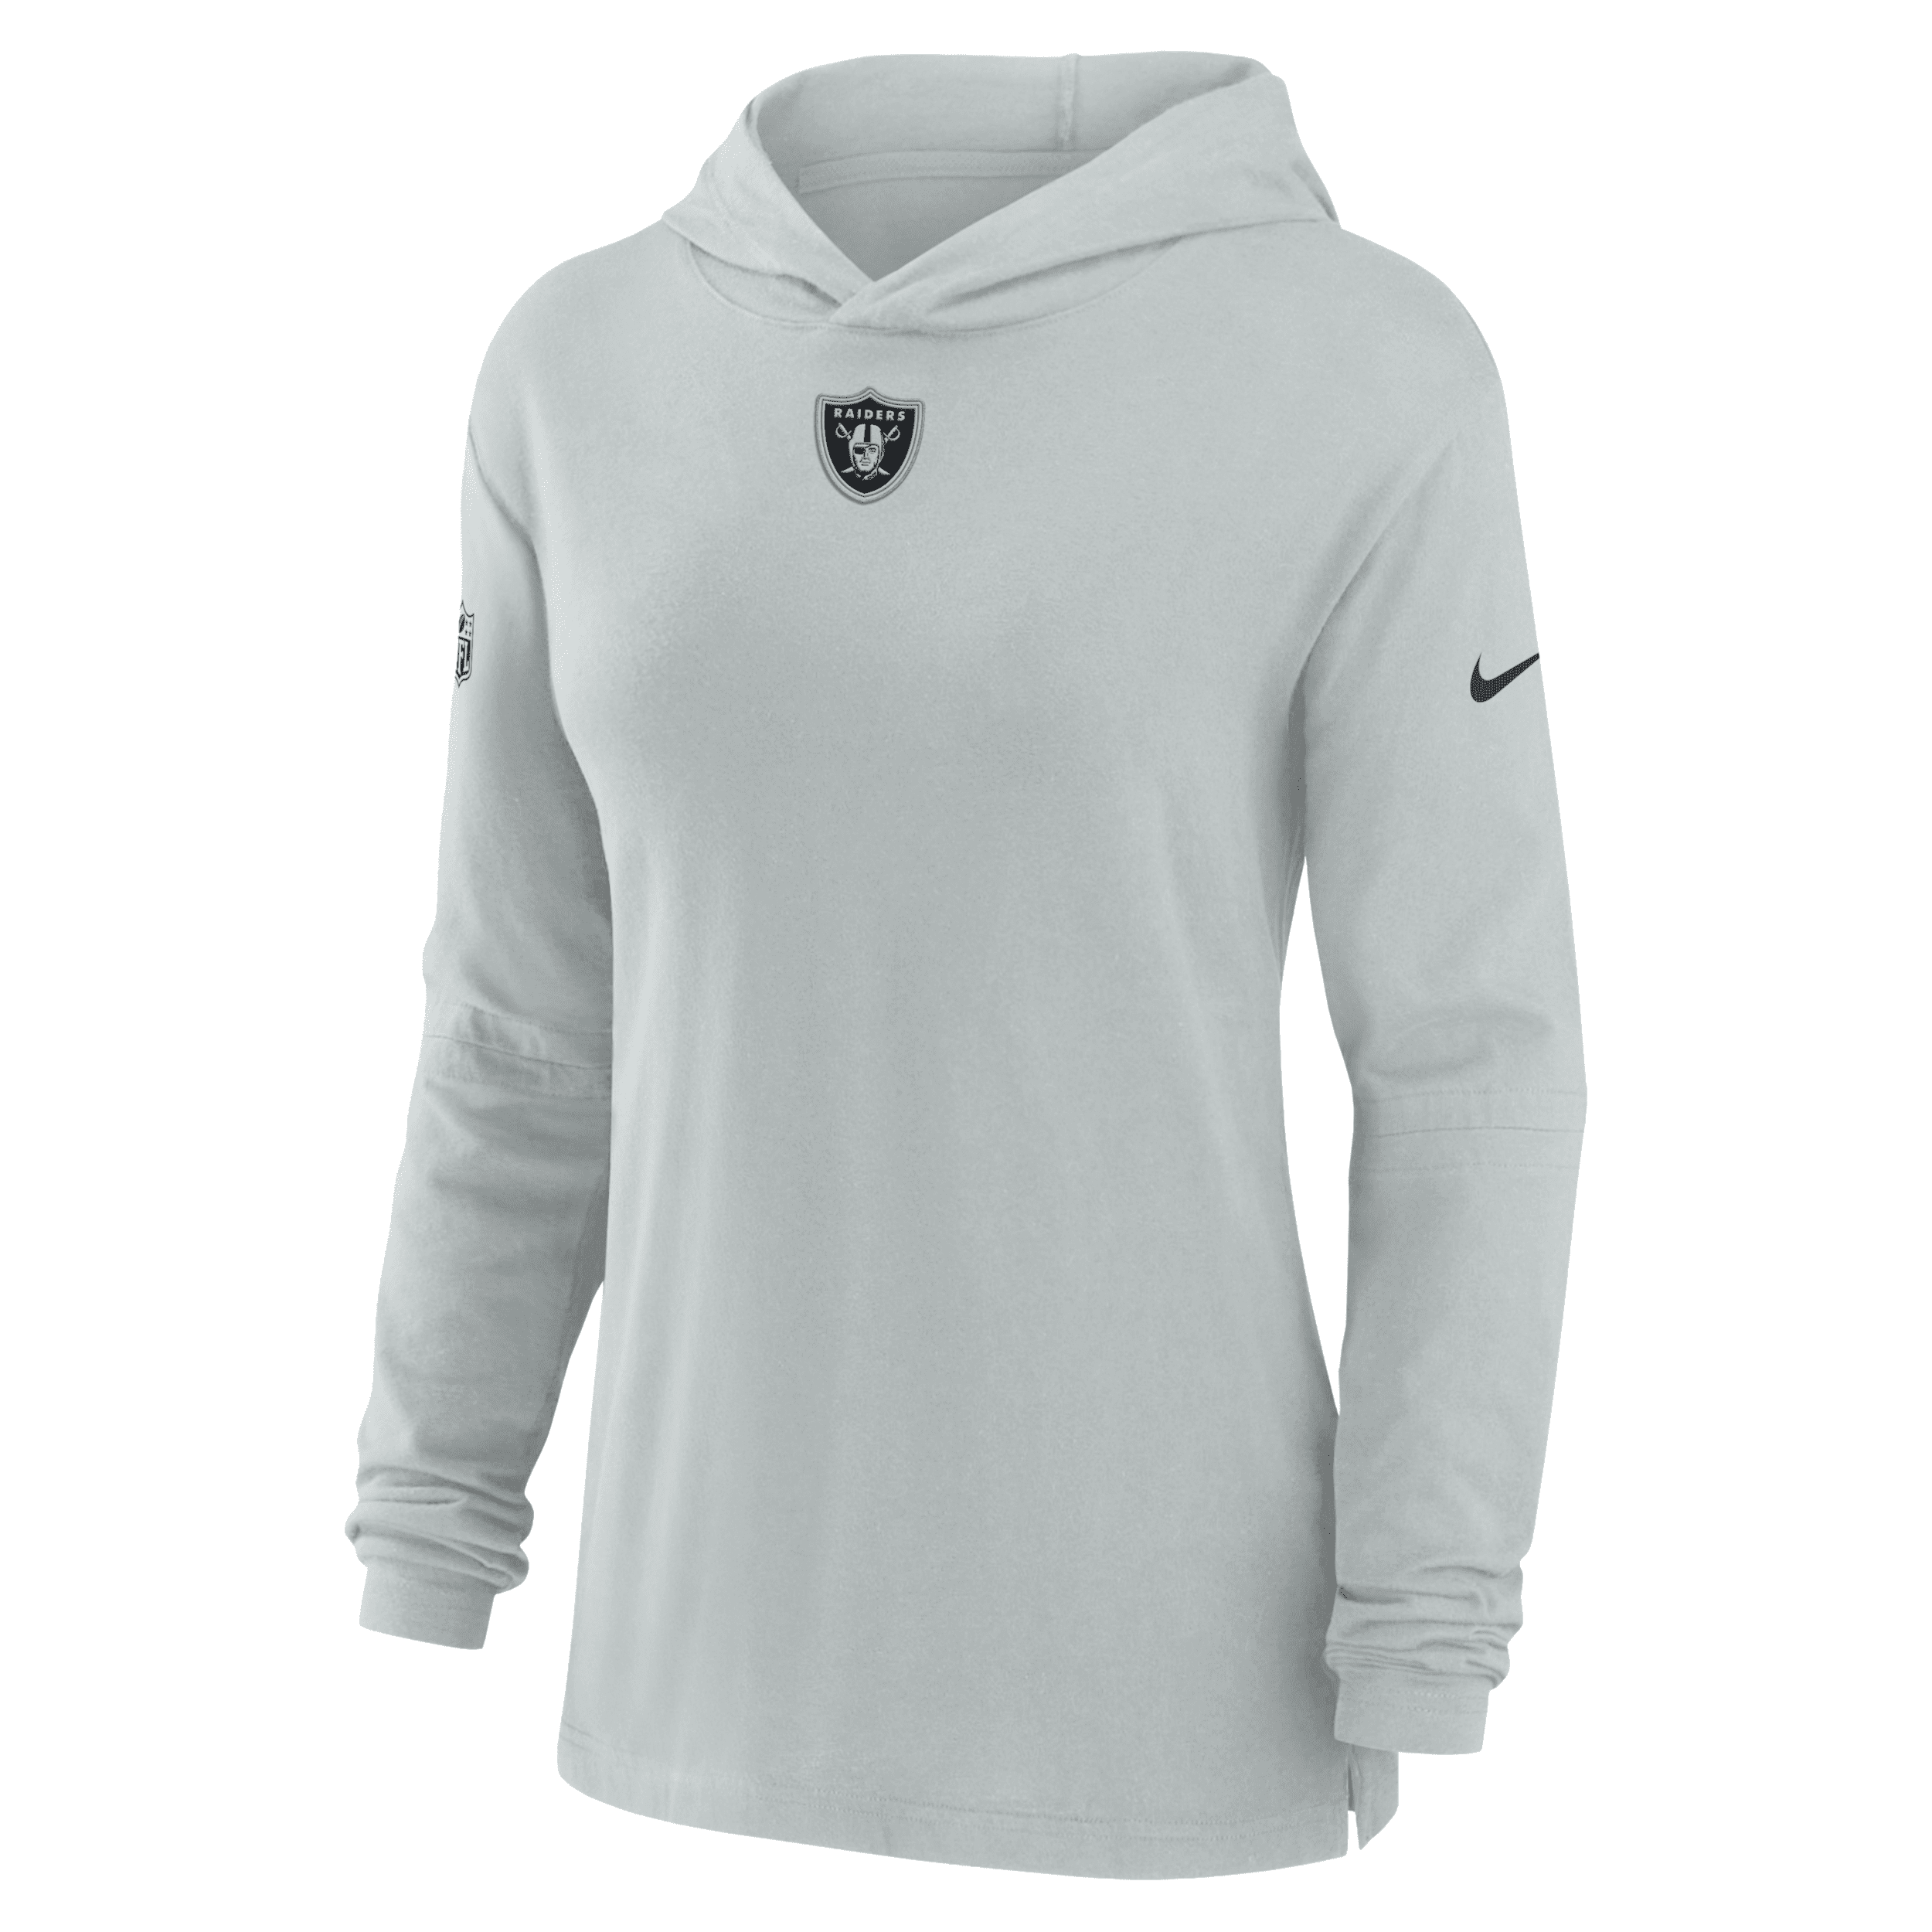 Nike Women's Dri-fit Sideline (nfl Las Vegas Raiders) Long-sleeve Hooded Top In Grey